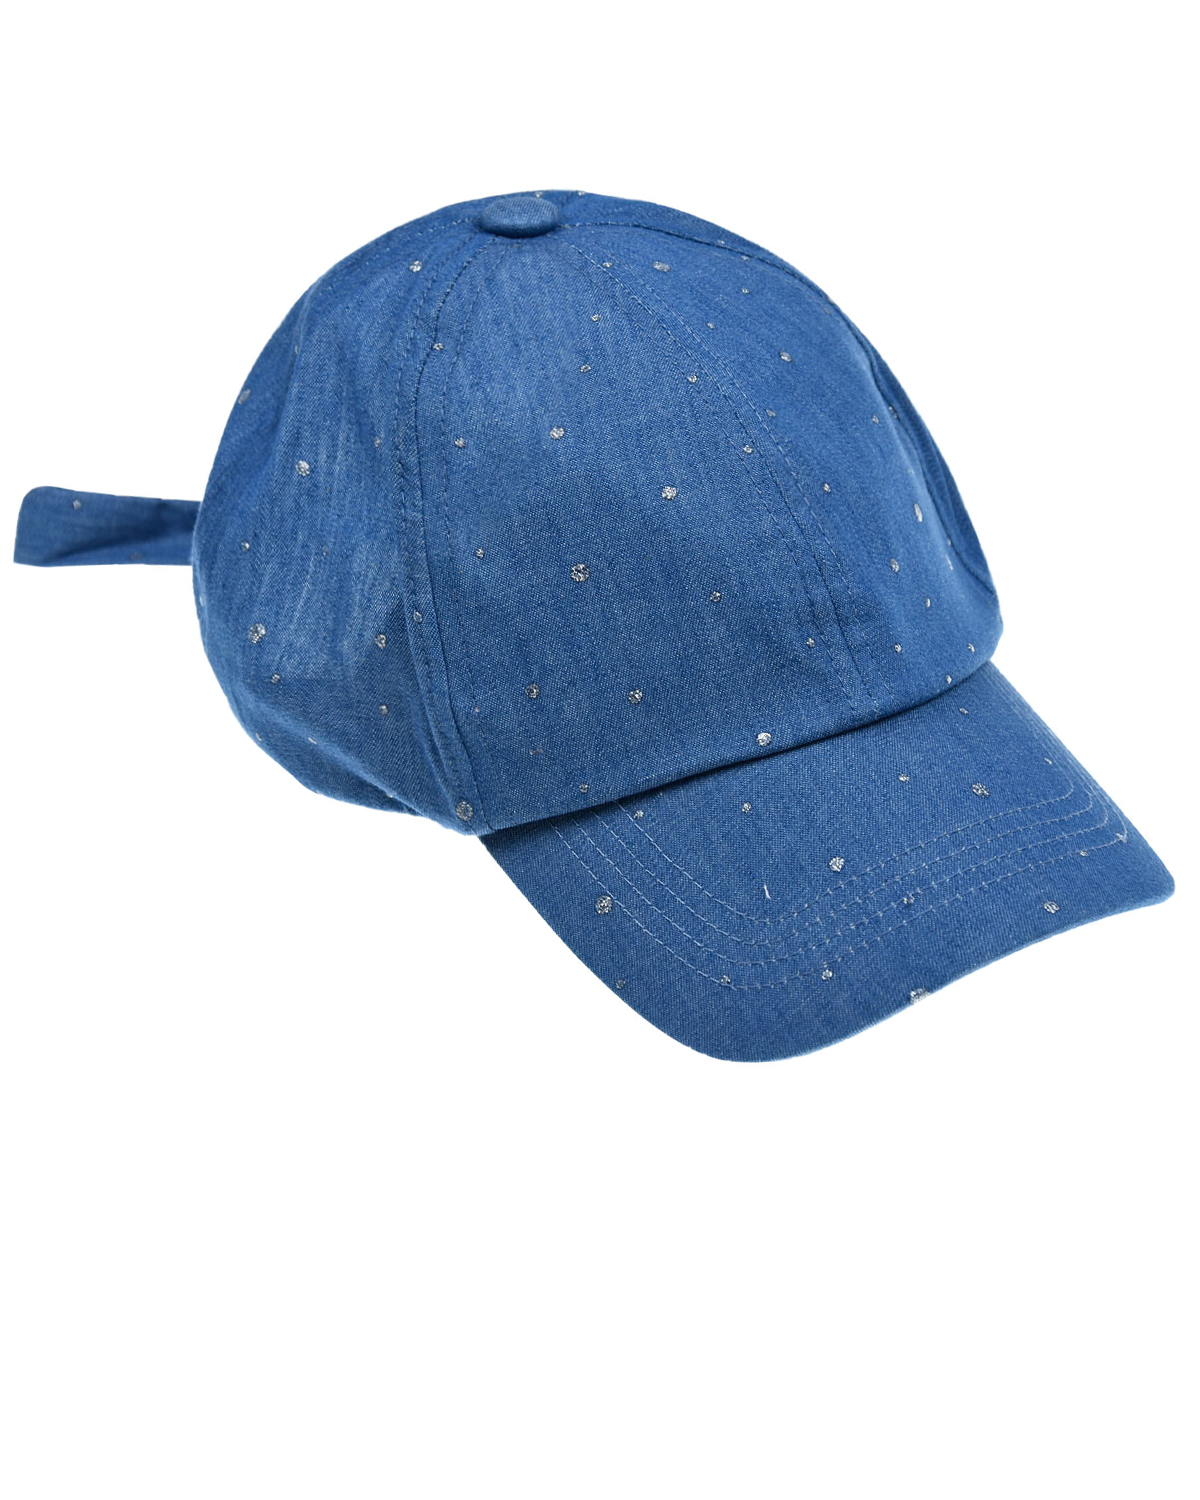 Джинсовая кепка с бантом MaxiMo детская, размер 55, цвет голубой